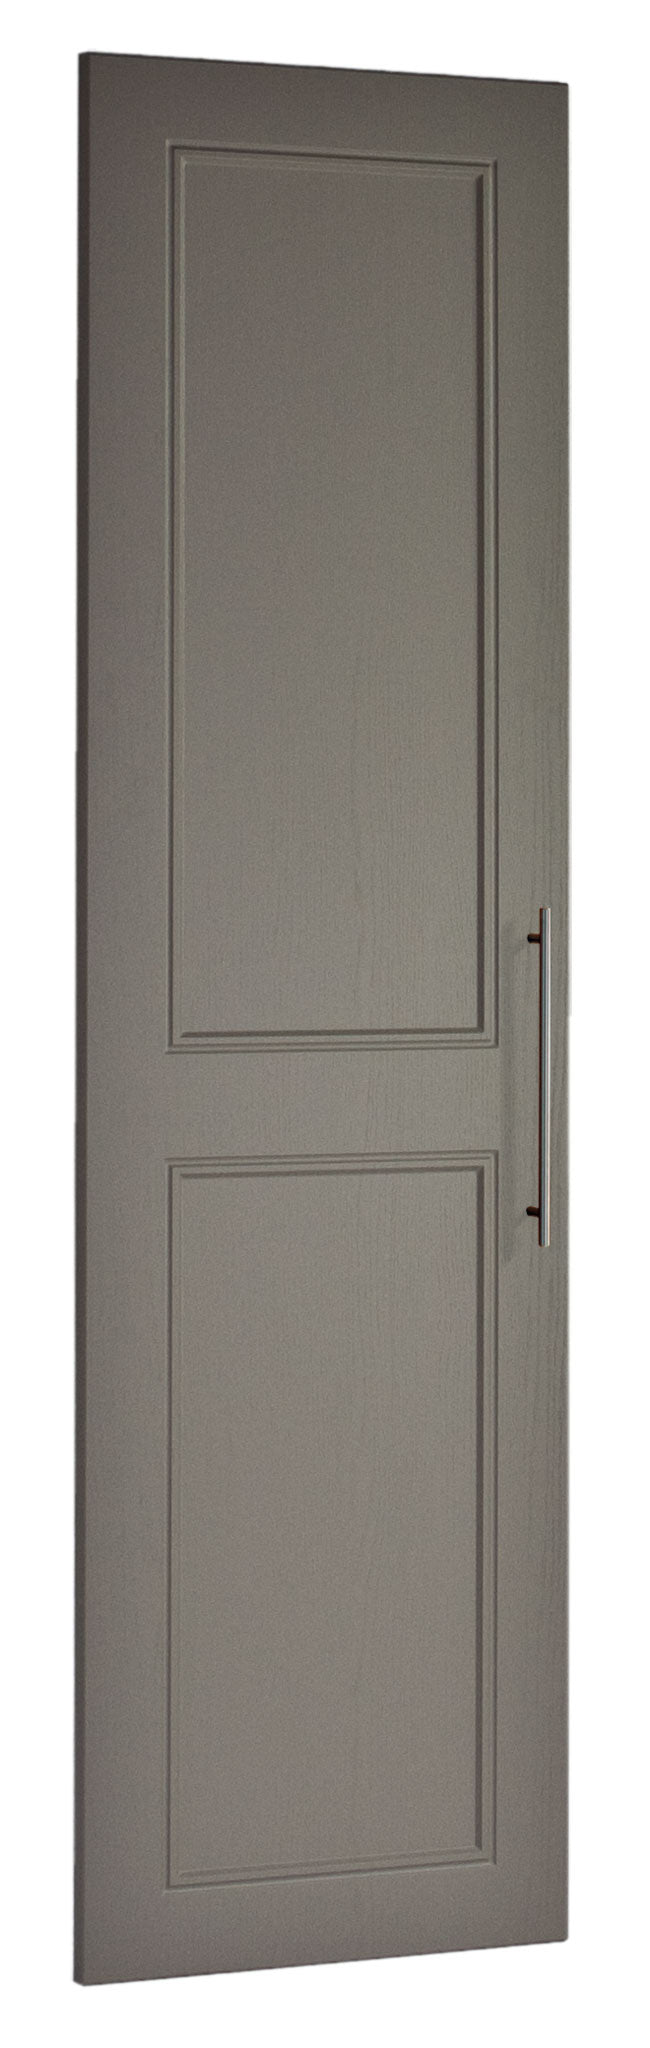  Ascot style cupboard door in Dulux shade.